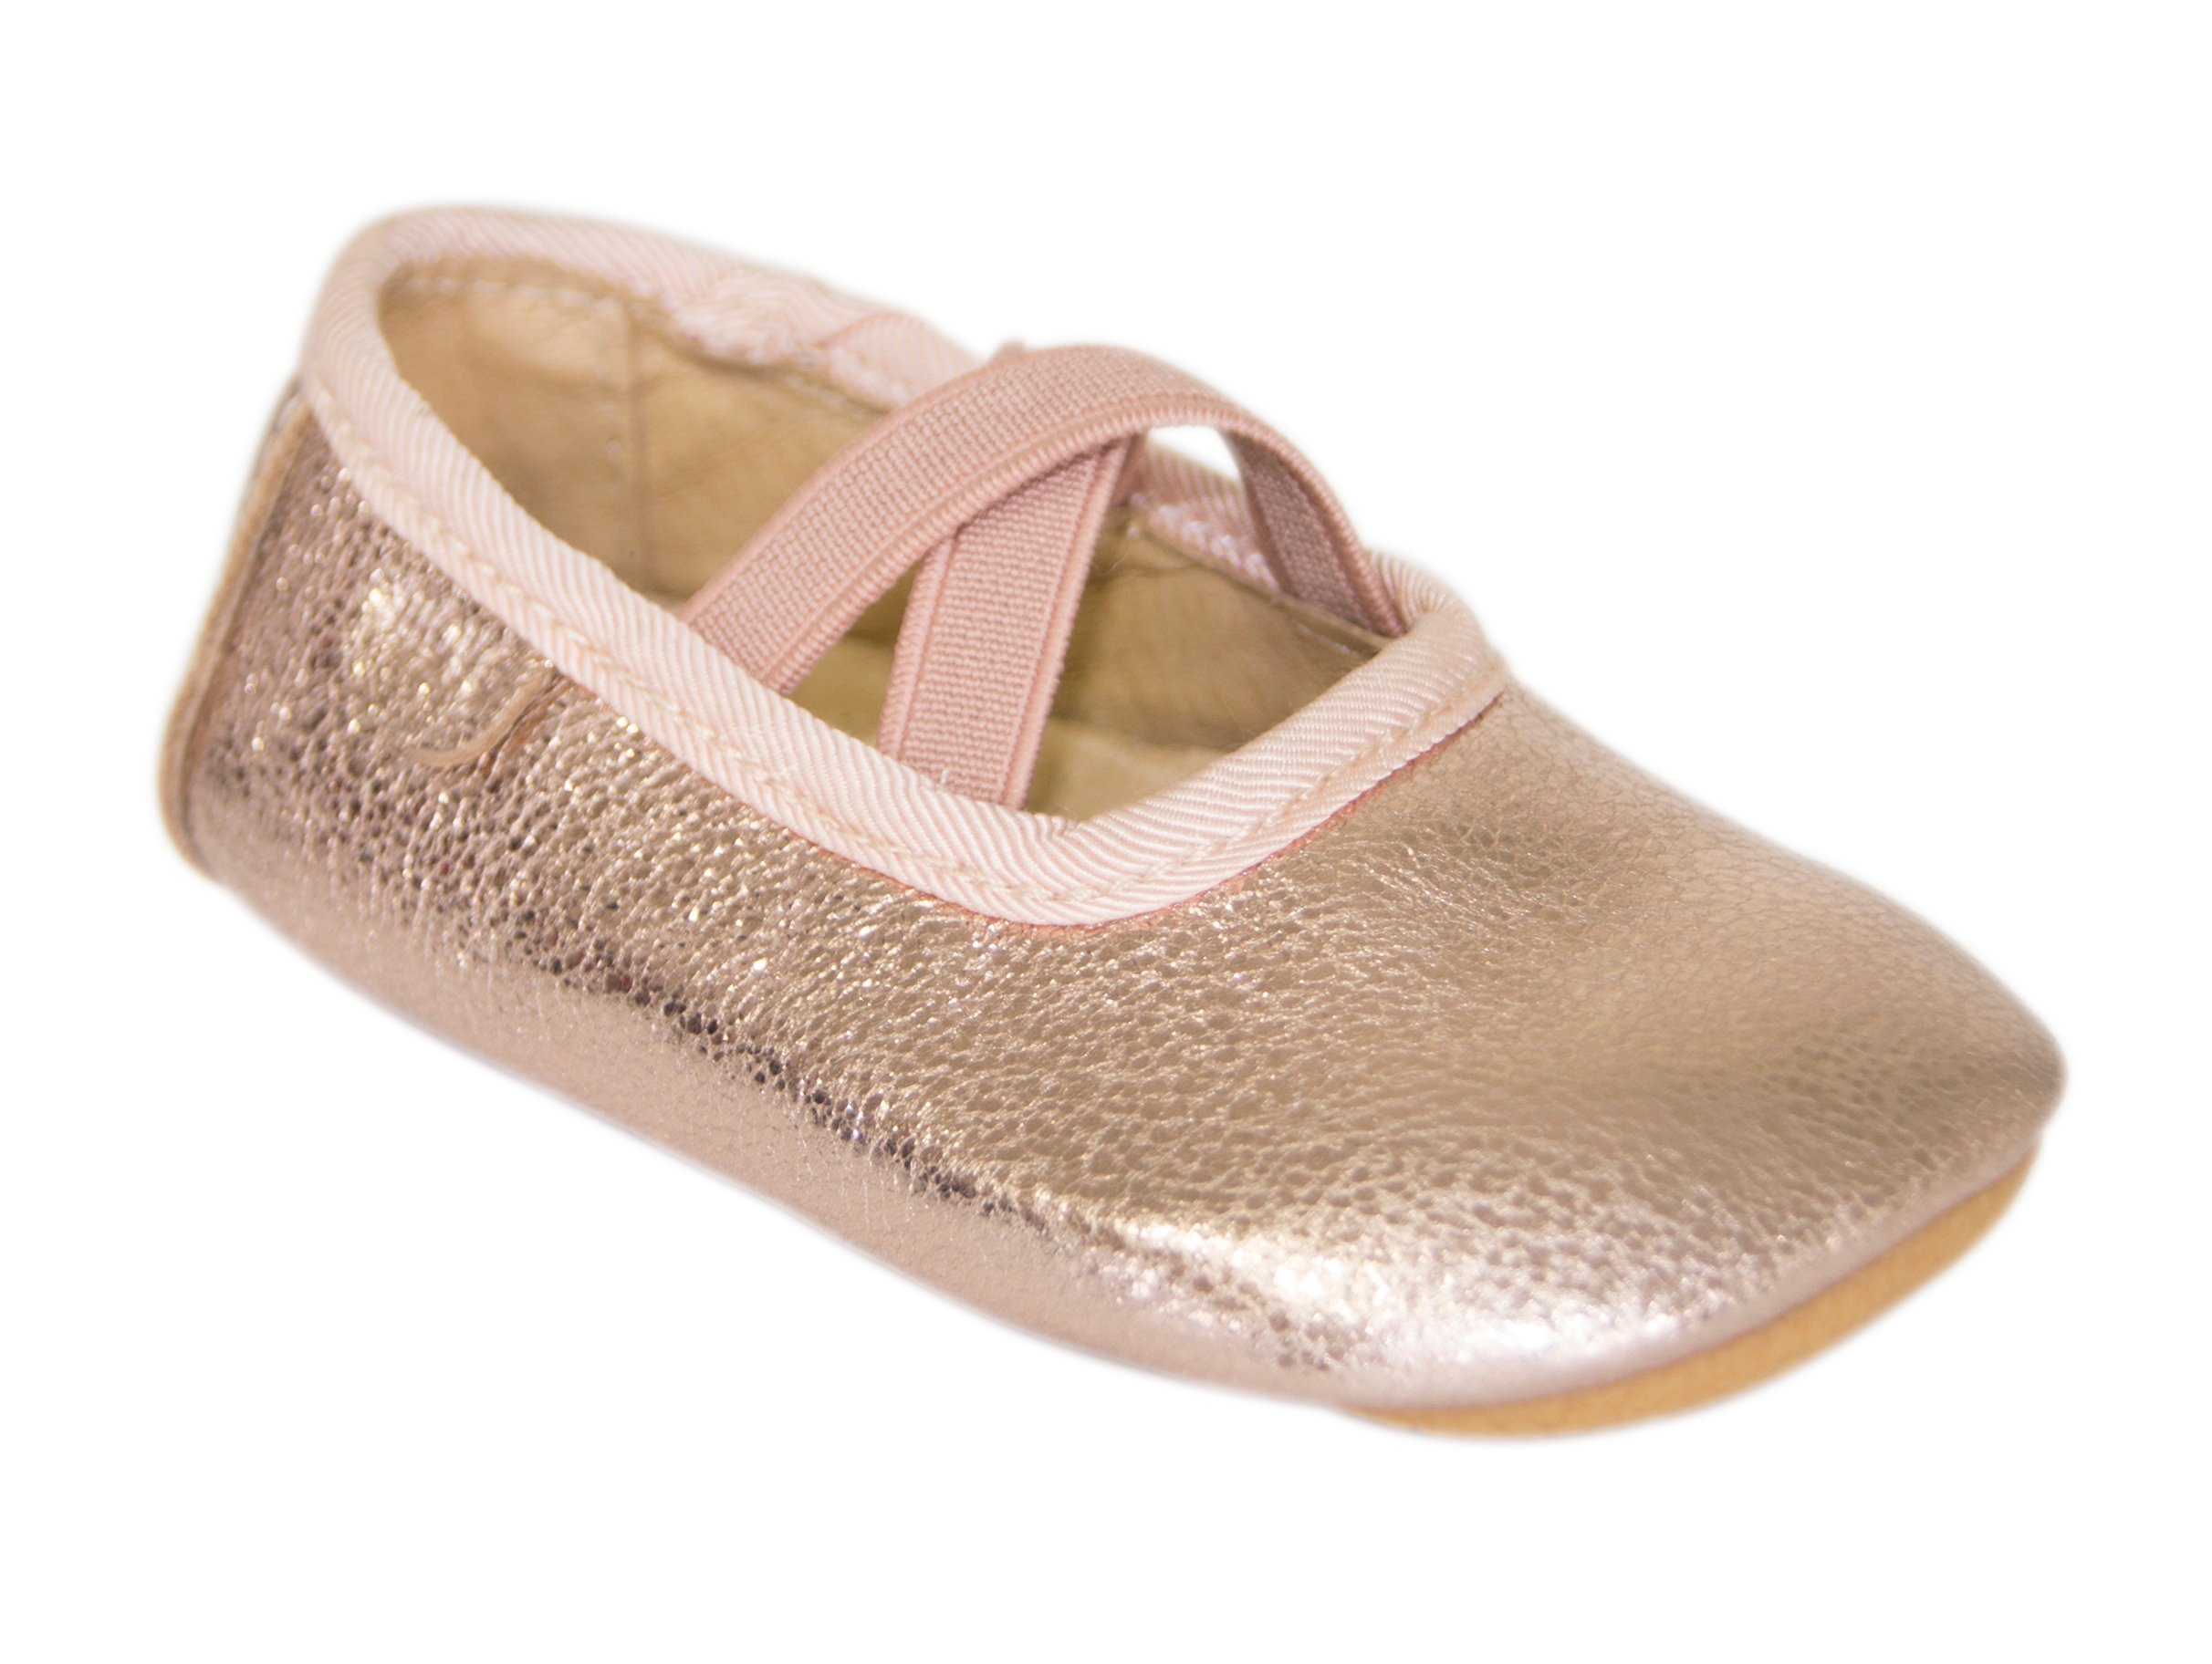 Buy - Prewalker Ballerina With Elastic - Copper (450105-915)